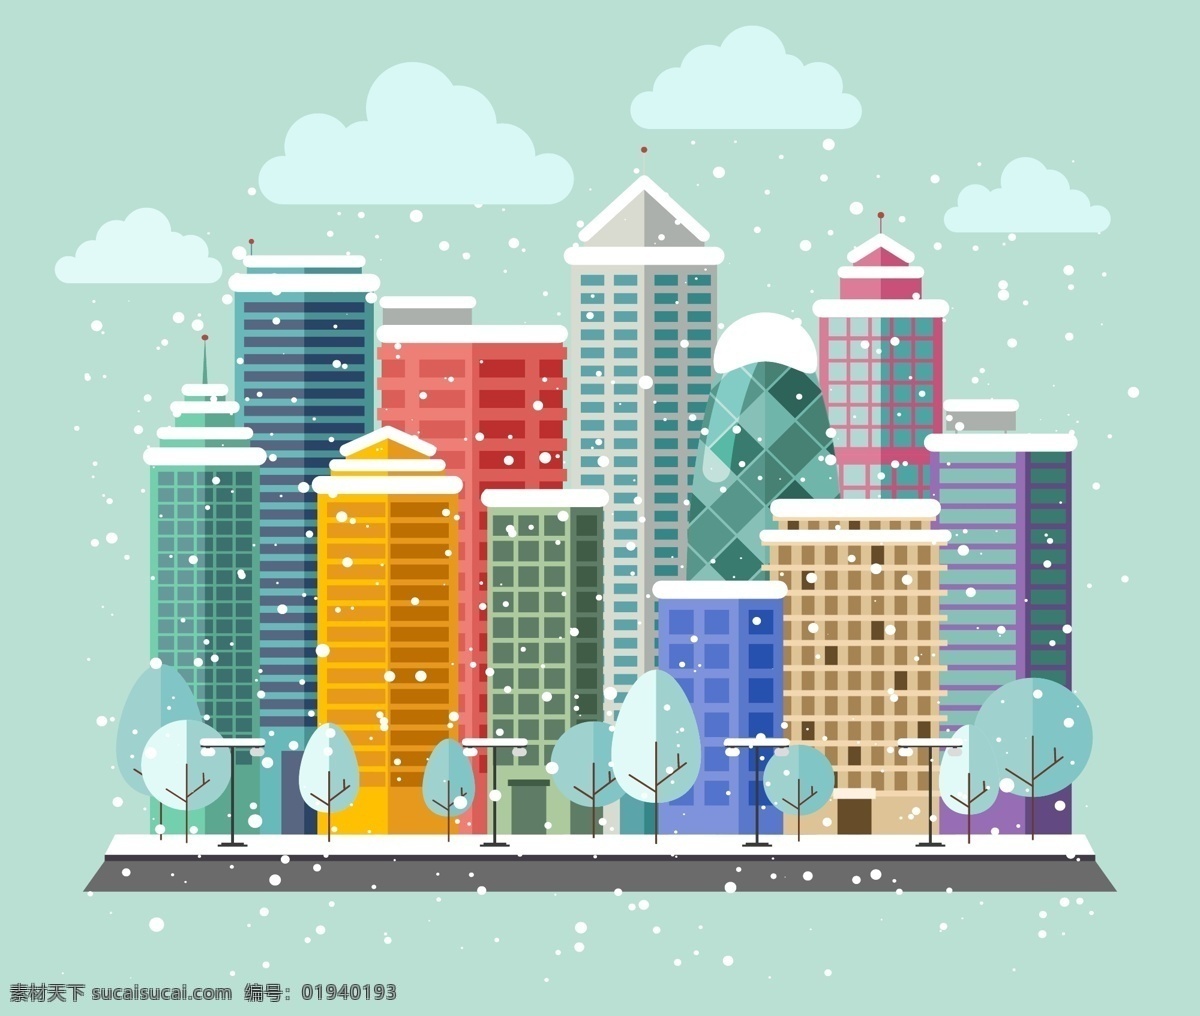 冬天 里 彩色 建筑 高楼 城市 下雪 云朵 插画 风景